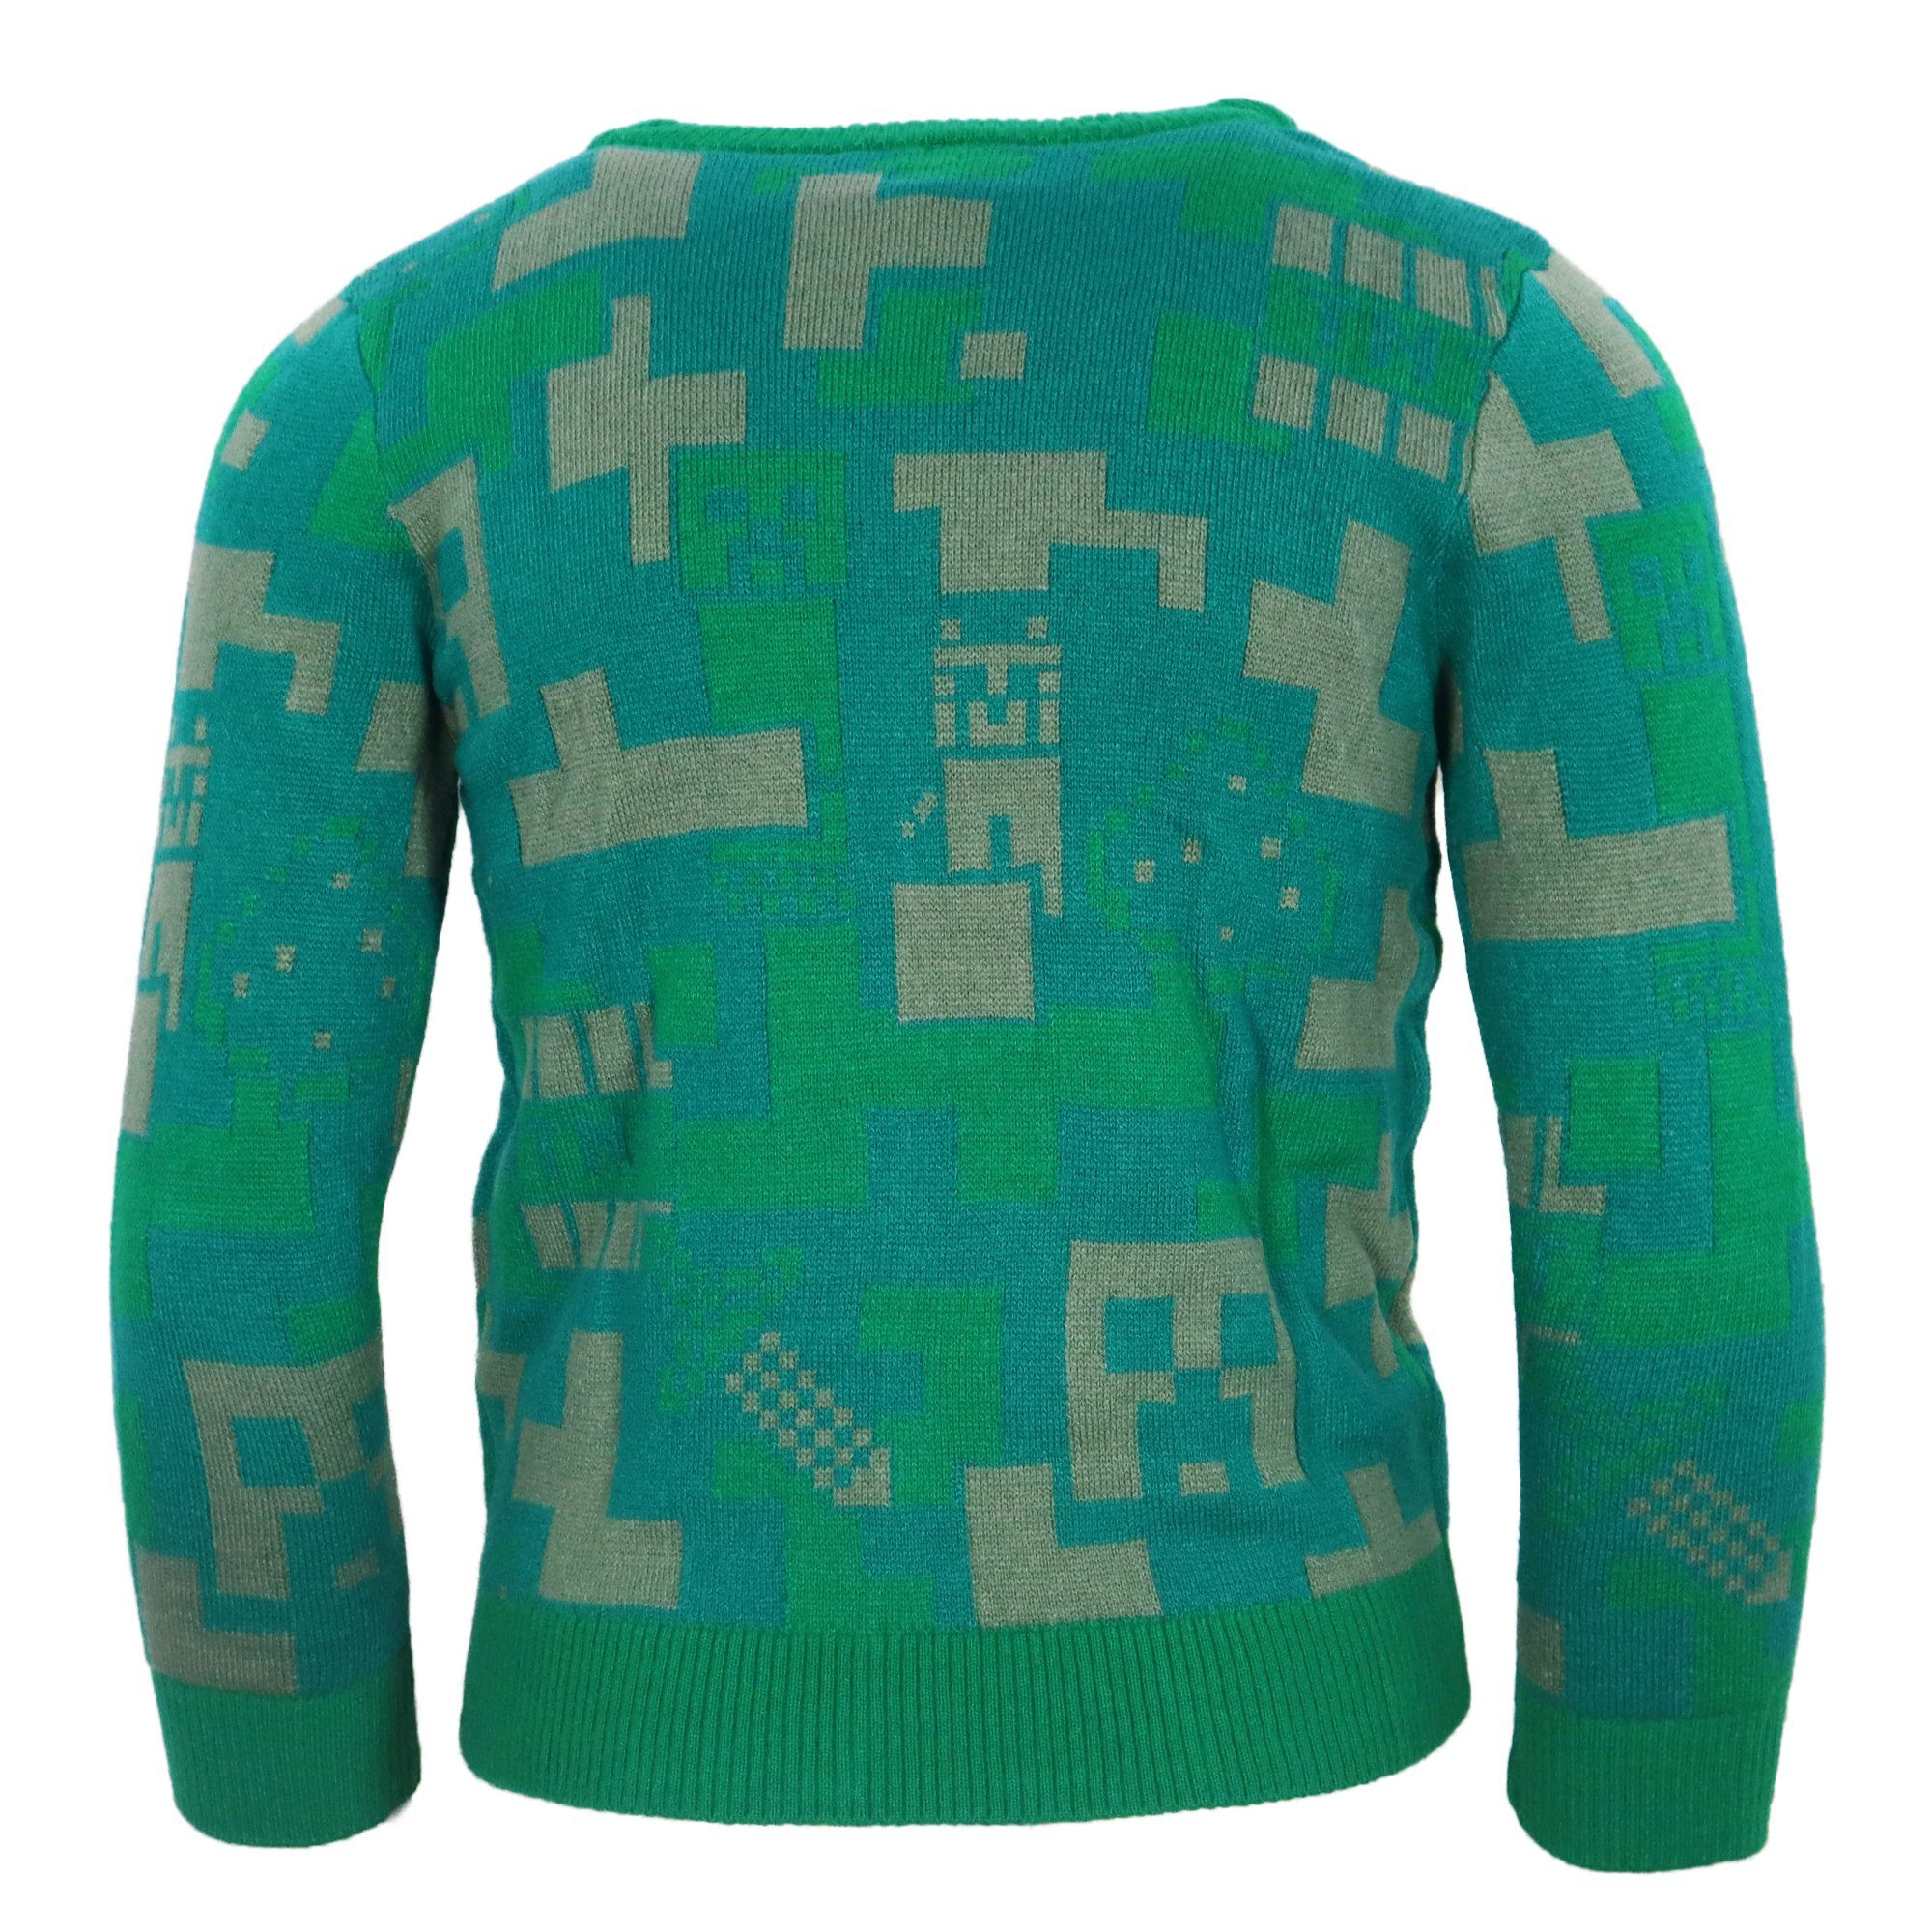 Minecraft Sweater Minecraft Gamer 116 152 Pullover Pulli Jungen Gr. Kinder bis Creeper